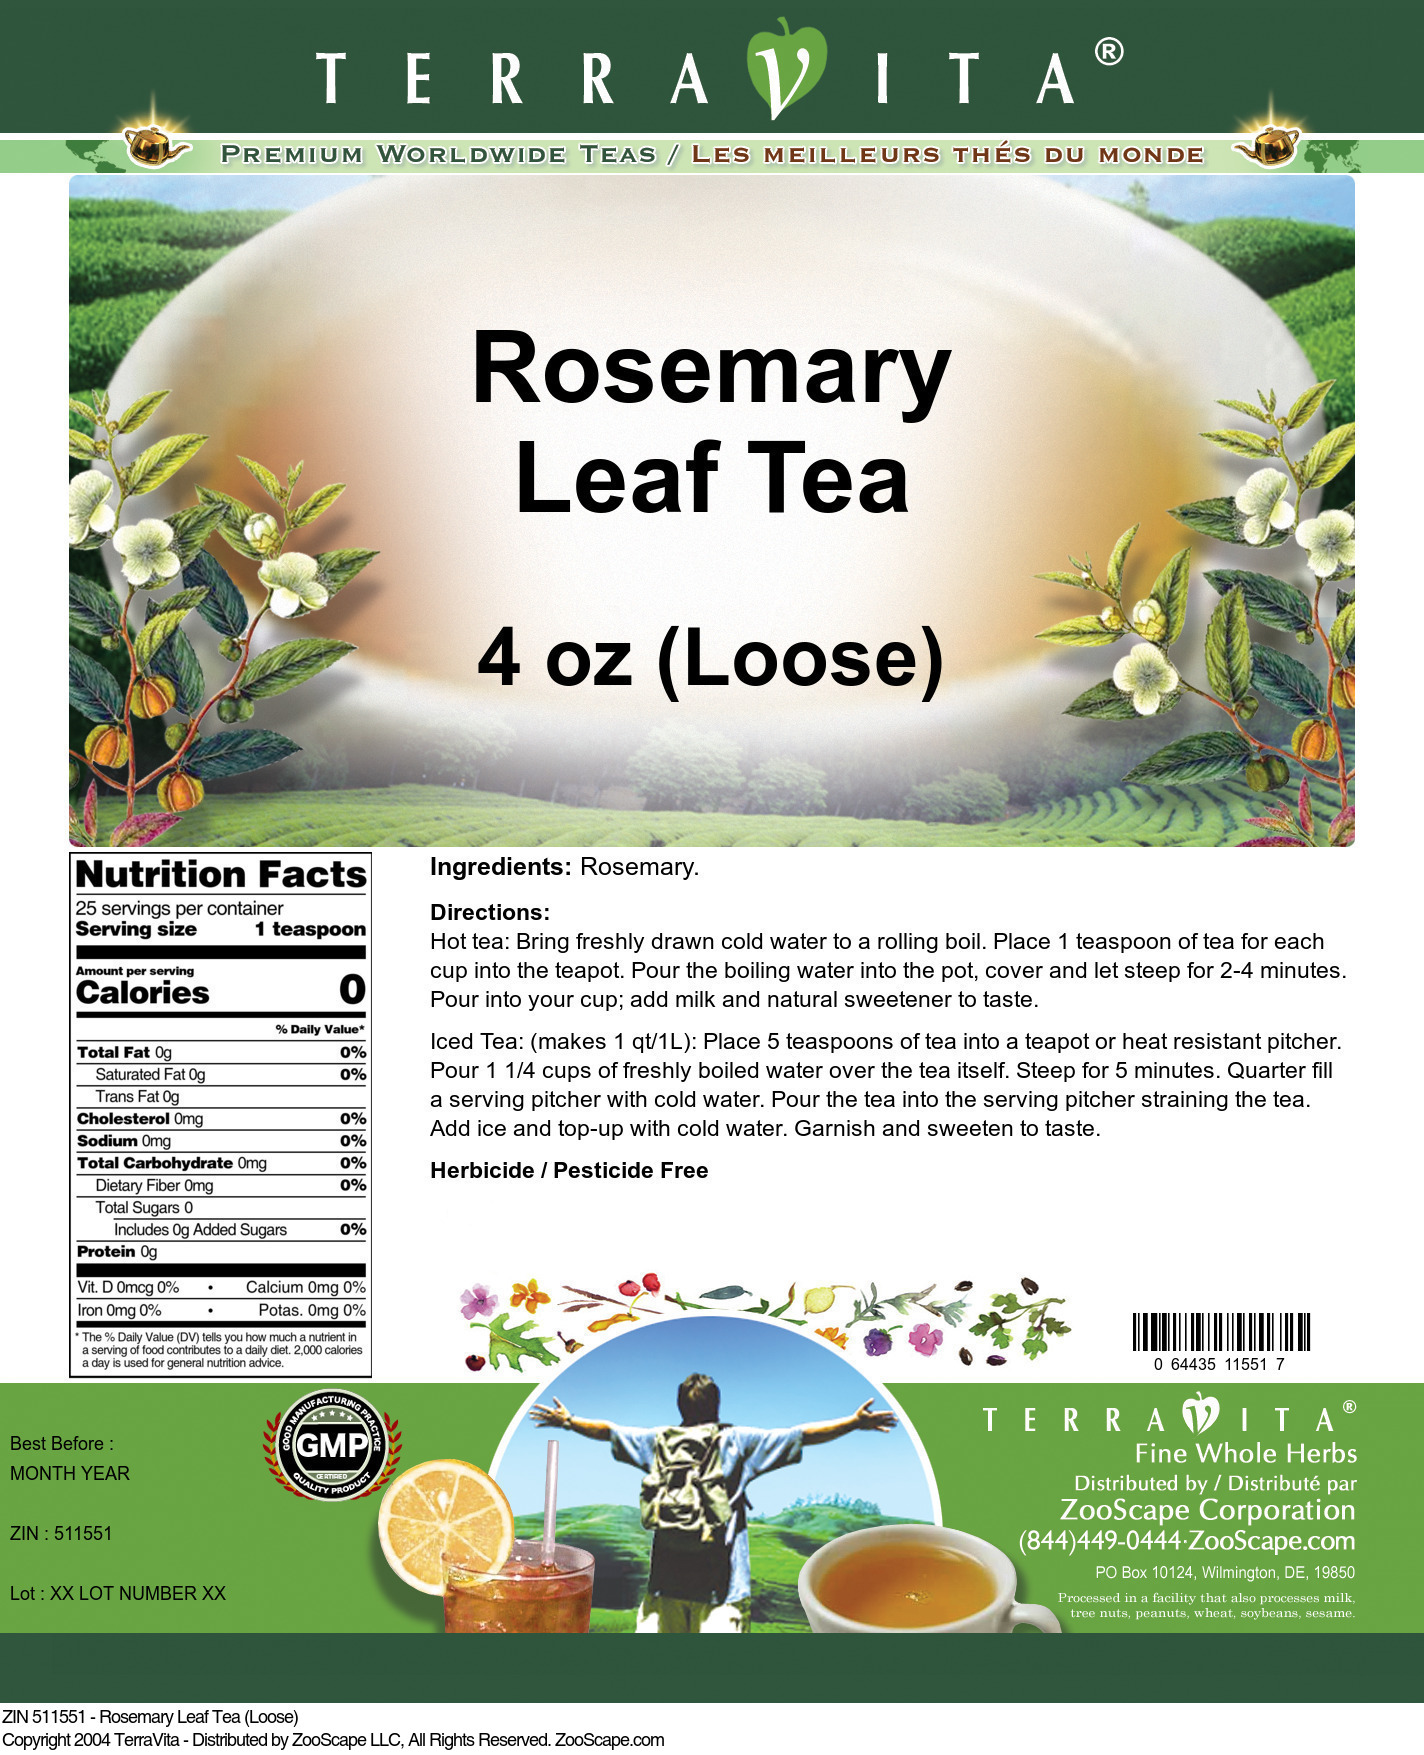 Rosemary Leaf Tea (Loose) - Label